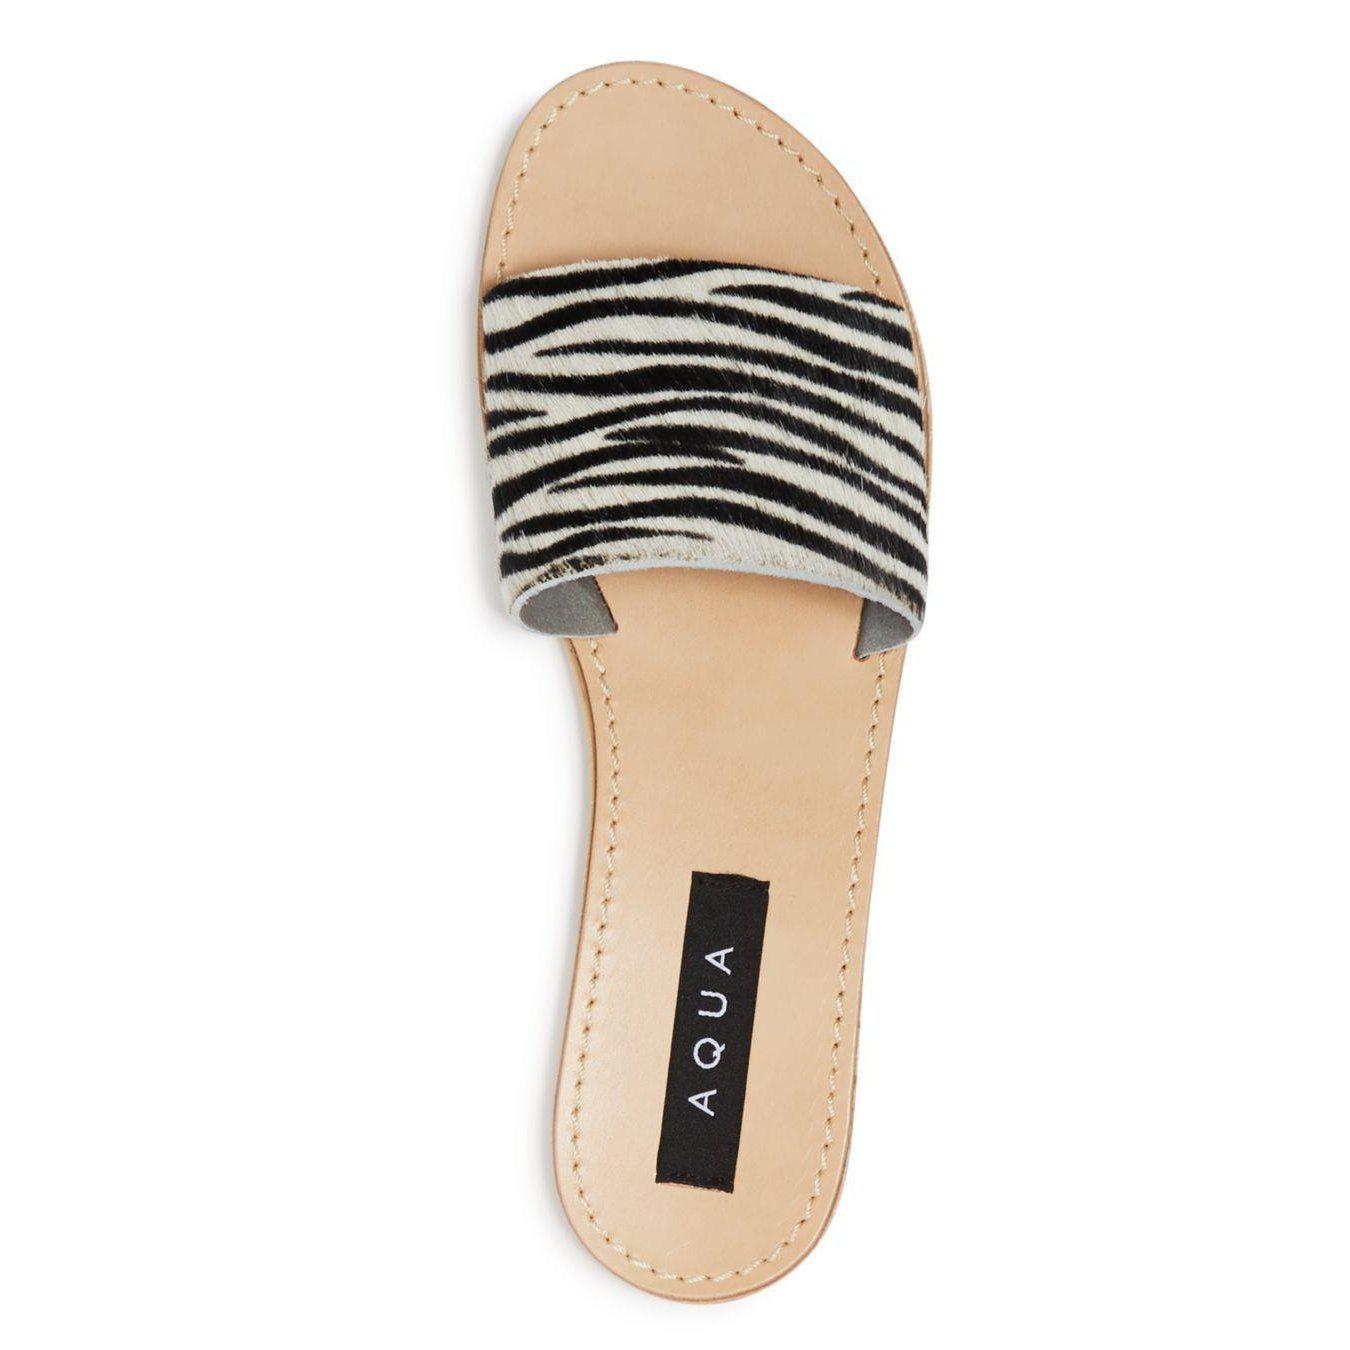 Zebra Print Slide Sandals